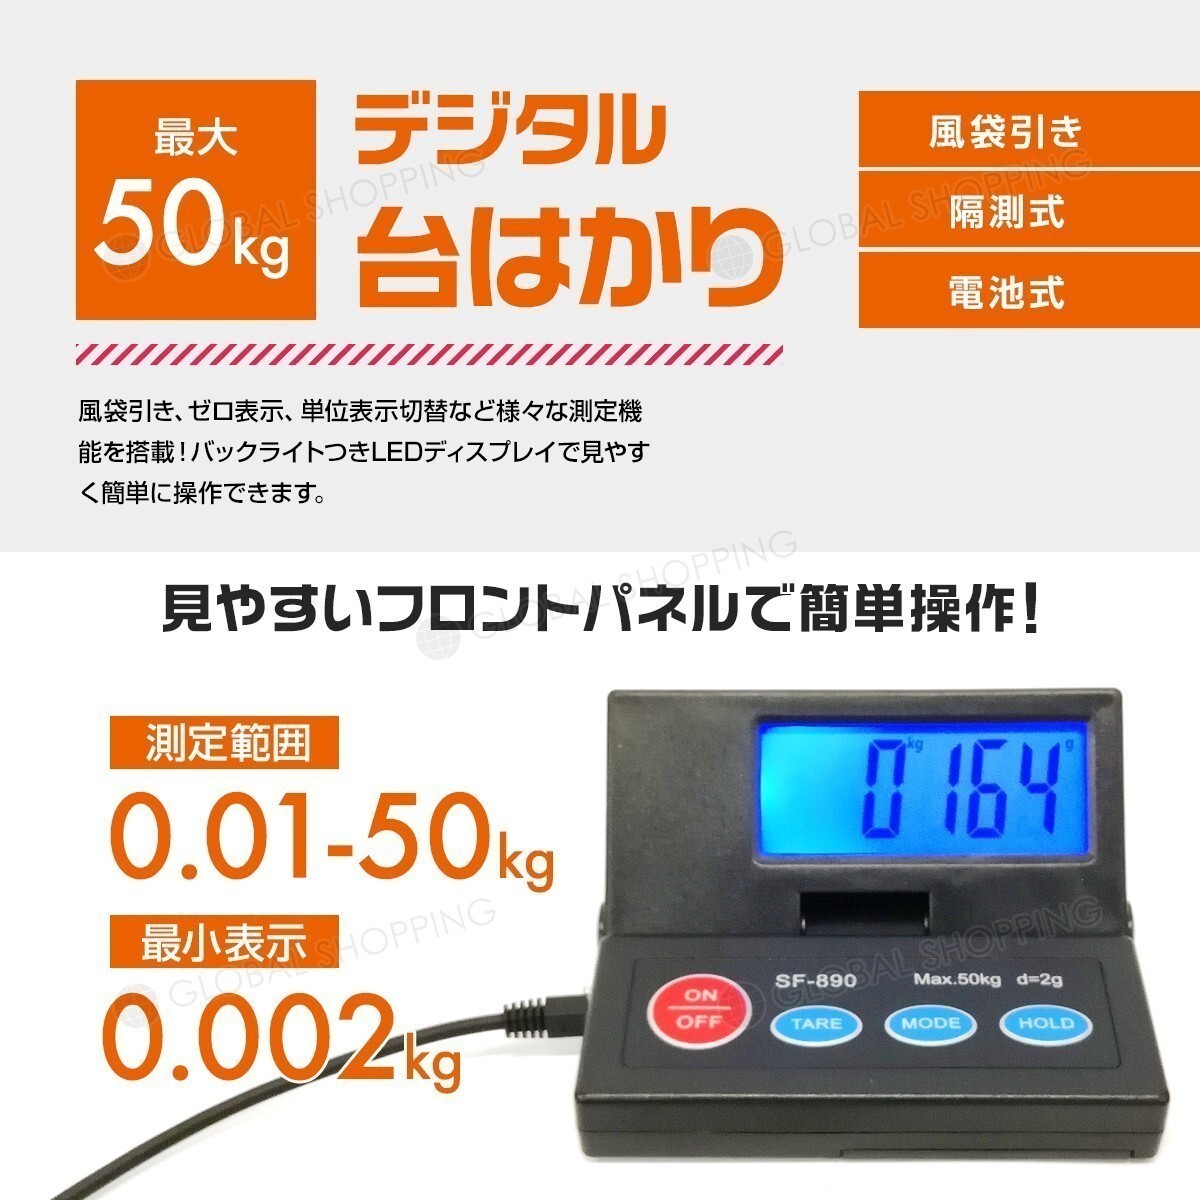  цифровой шт. измерение 50kg цифровой шкала для бытового использования цифровой измерение шкала электронные весы цифровой шкала количество . итого . измерение весы 